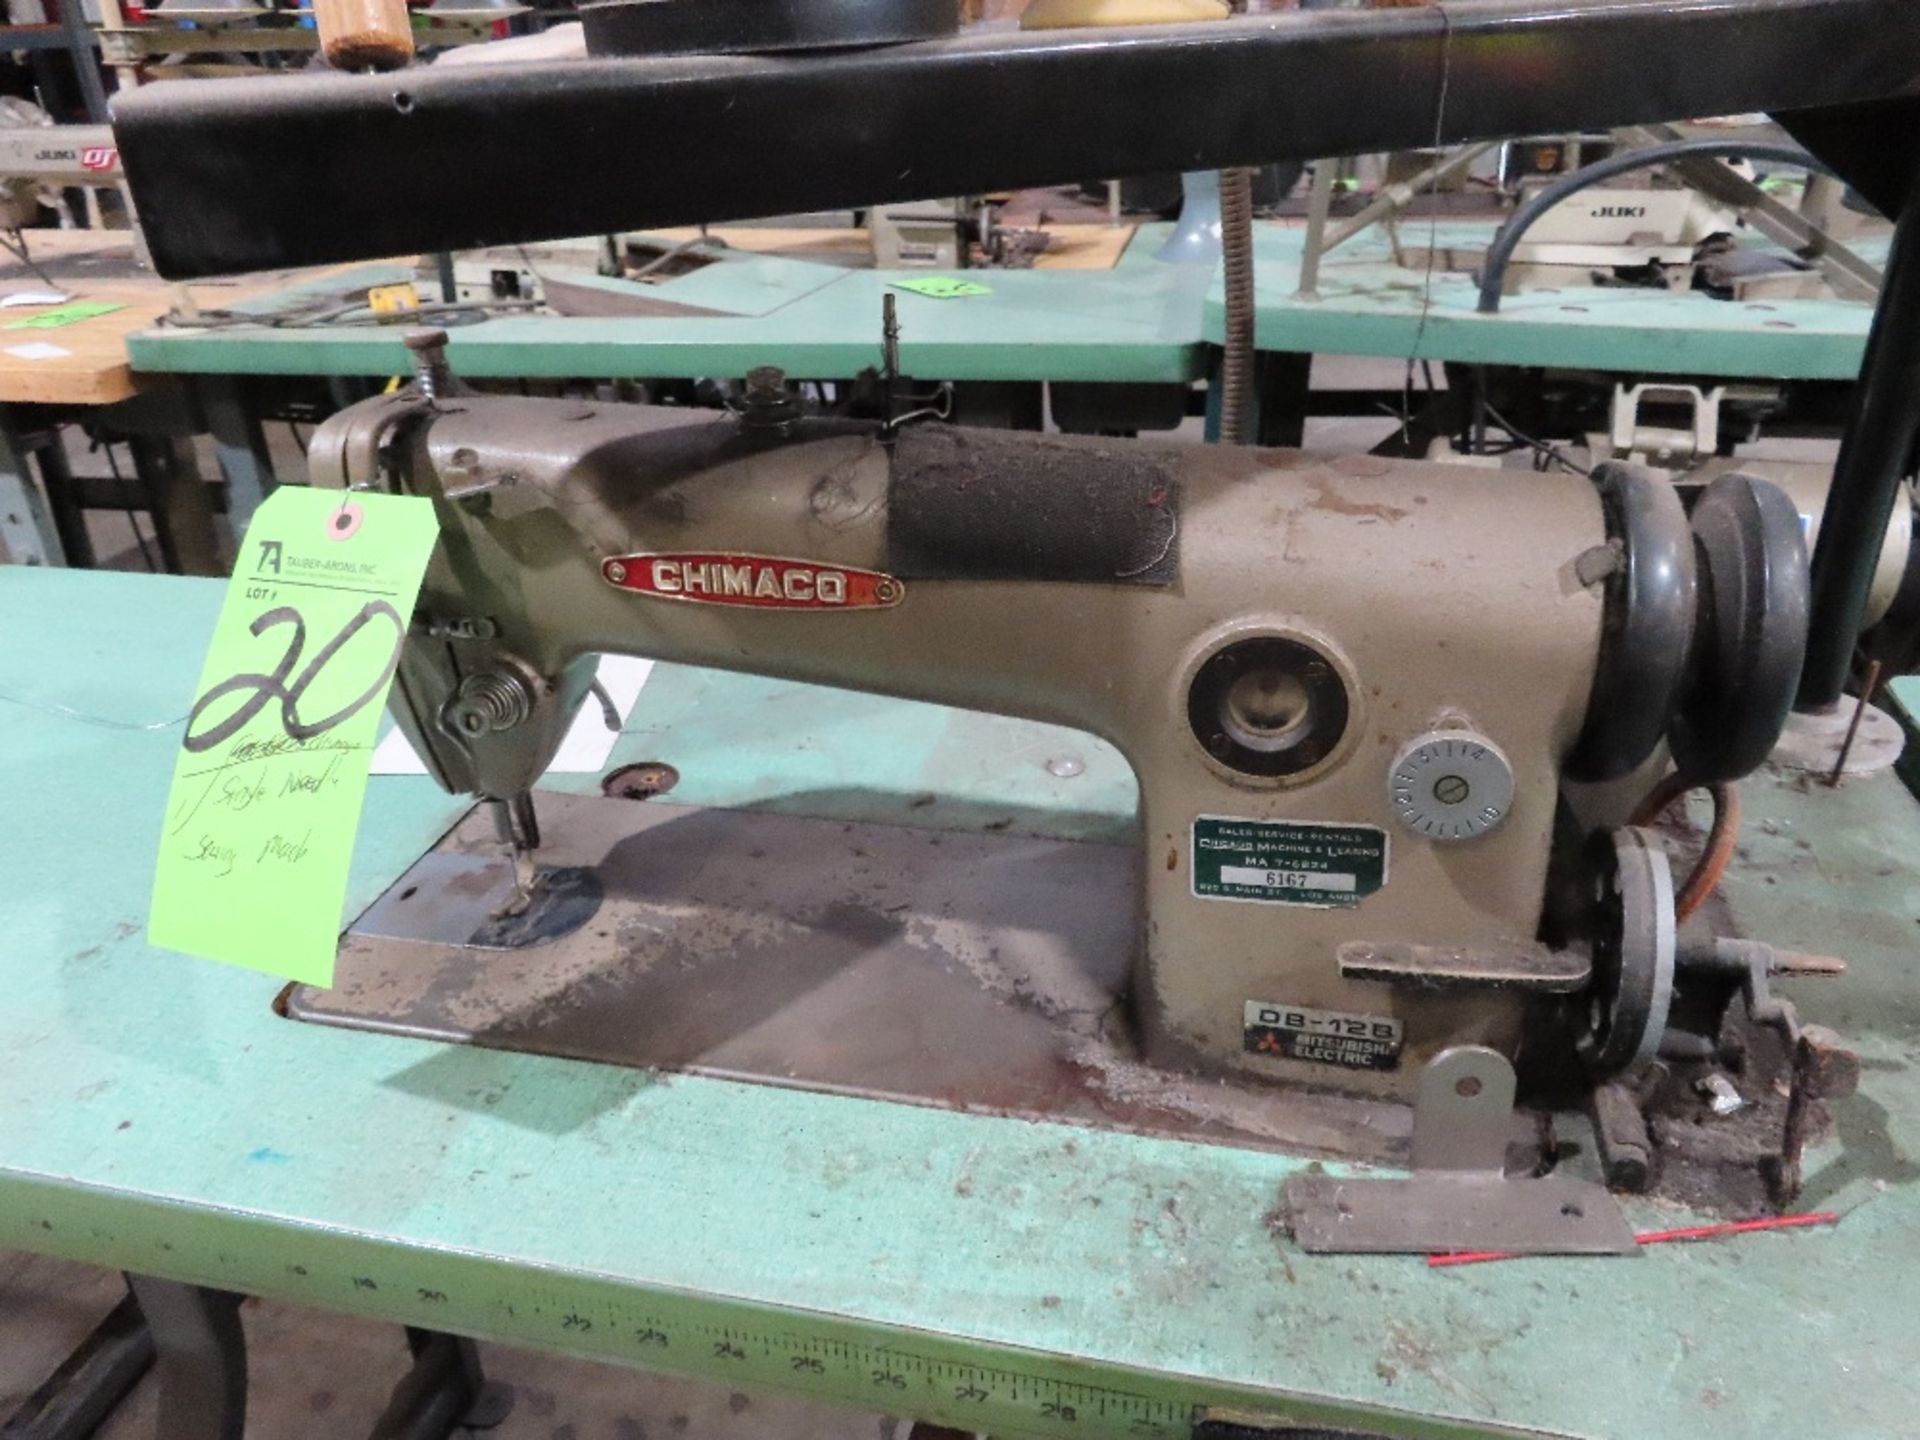 Chimago Single Needle Sewing Machine - Image 2 of 2